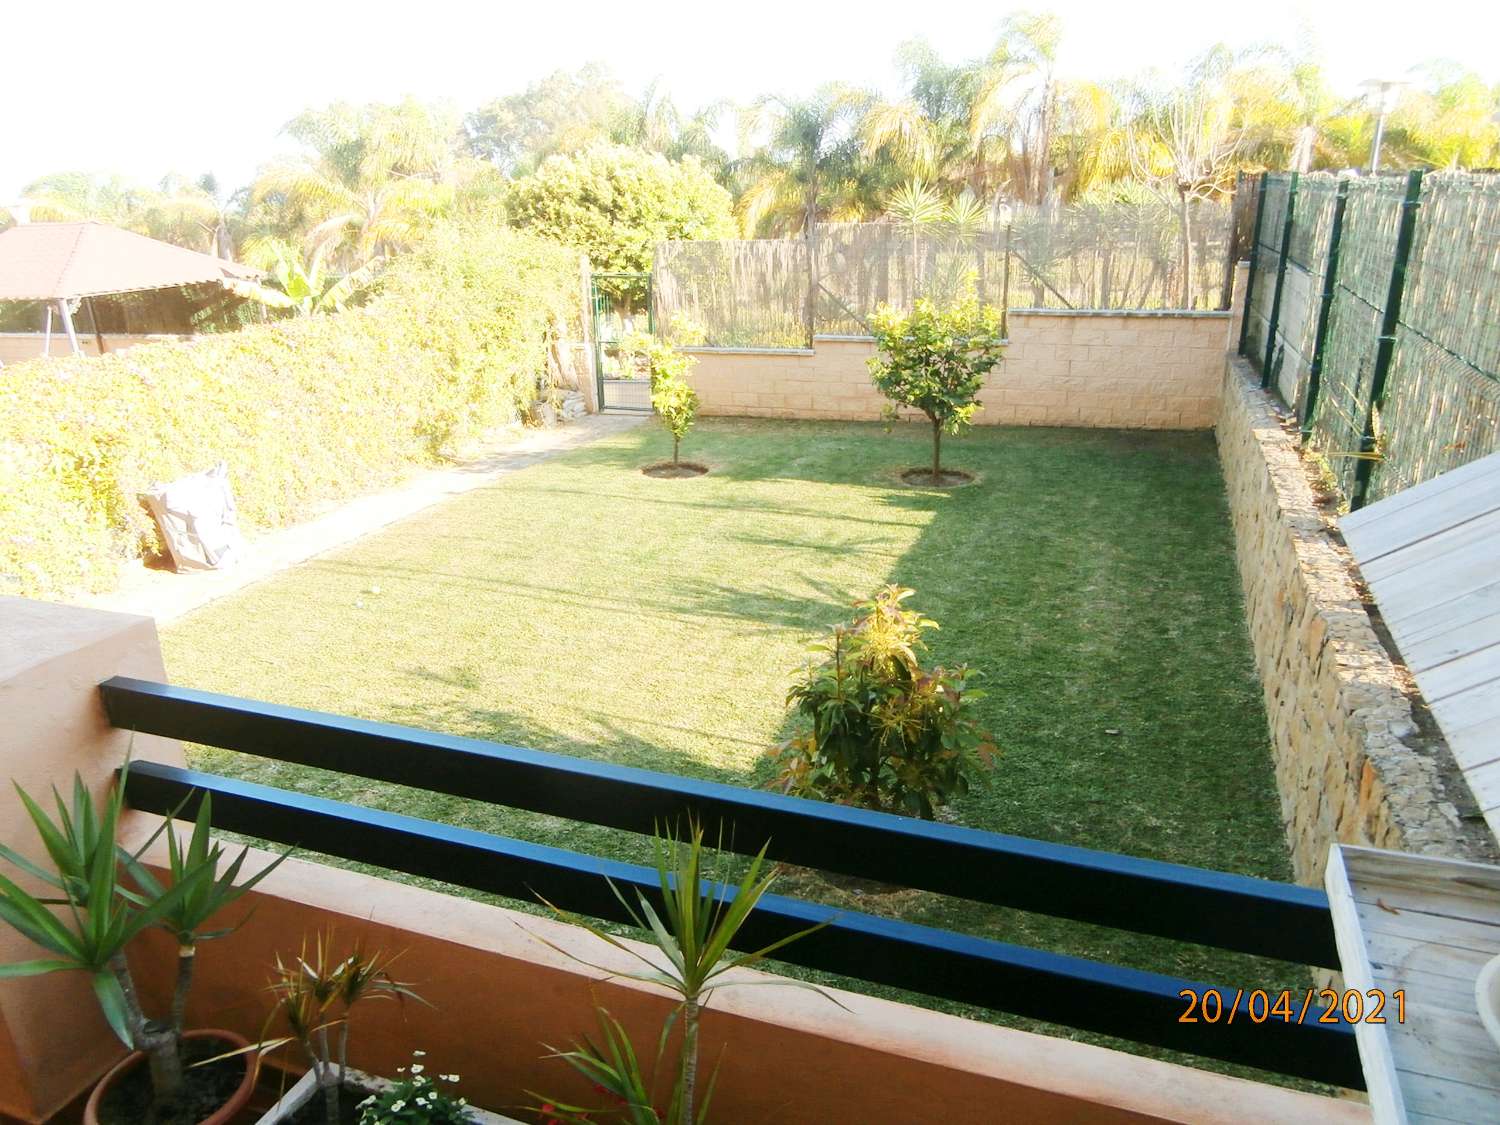 OPORTUNIDAD, recién reformado apartamento, planta baja con gran jardín en venta, zona de Cancelada Estepona, a 13 km de Puerto Banús.